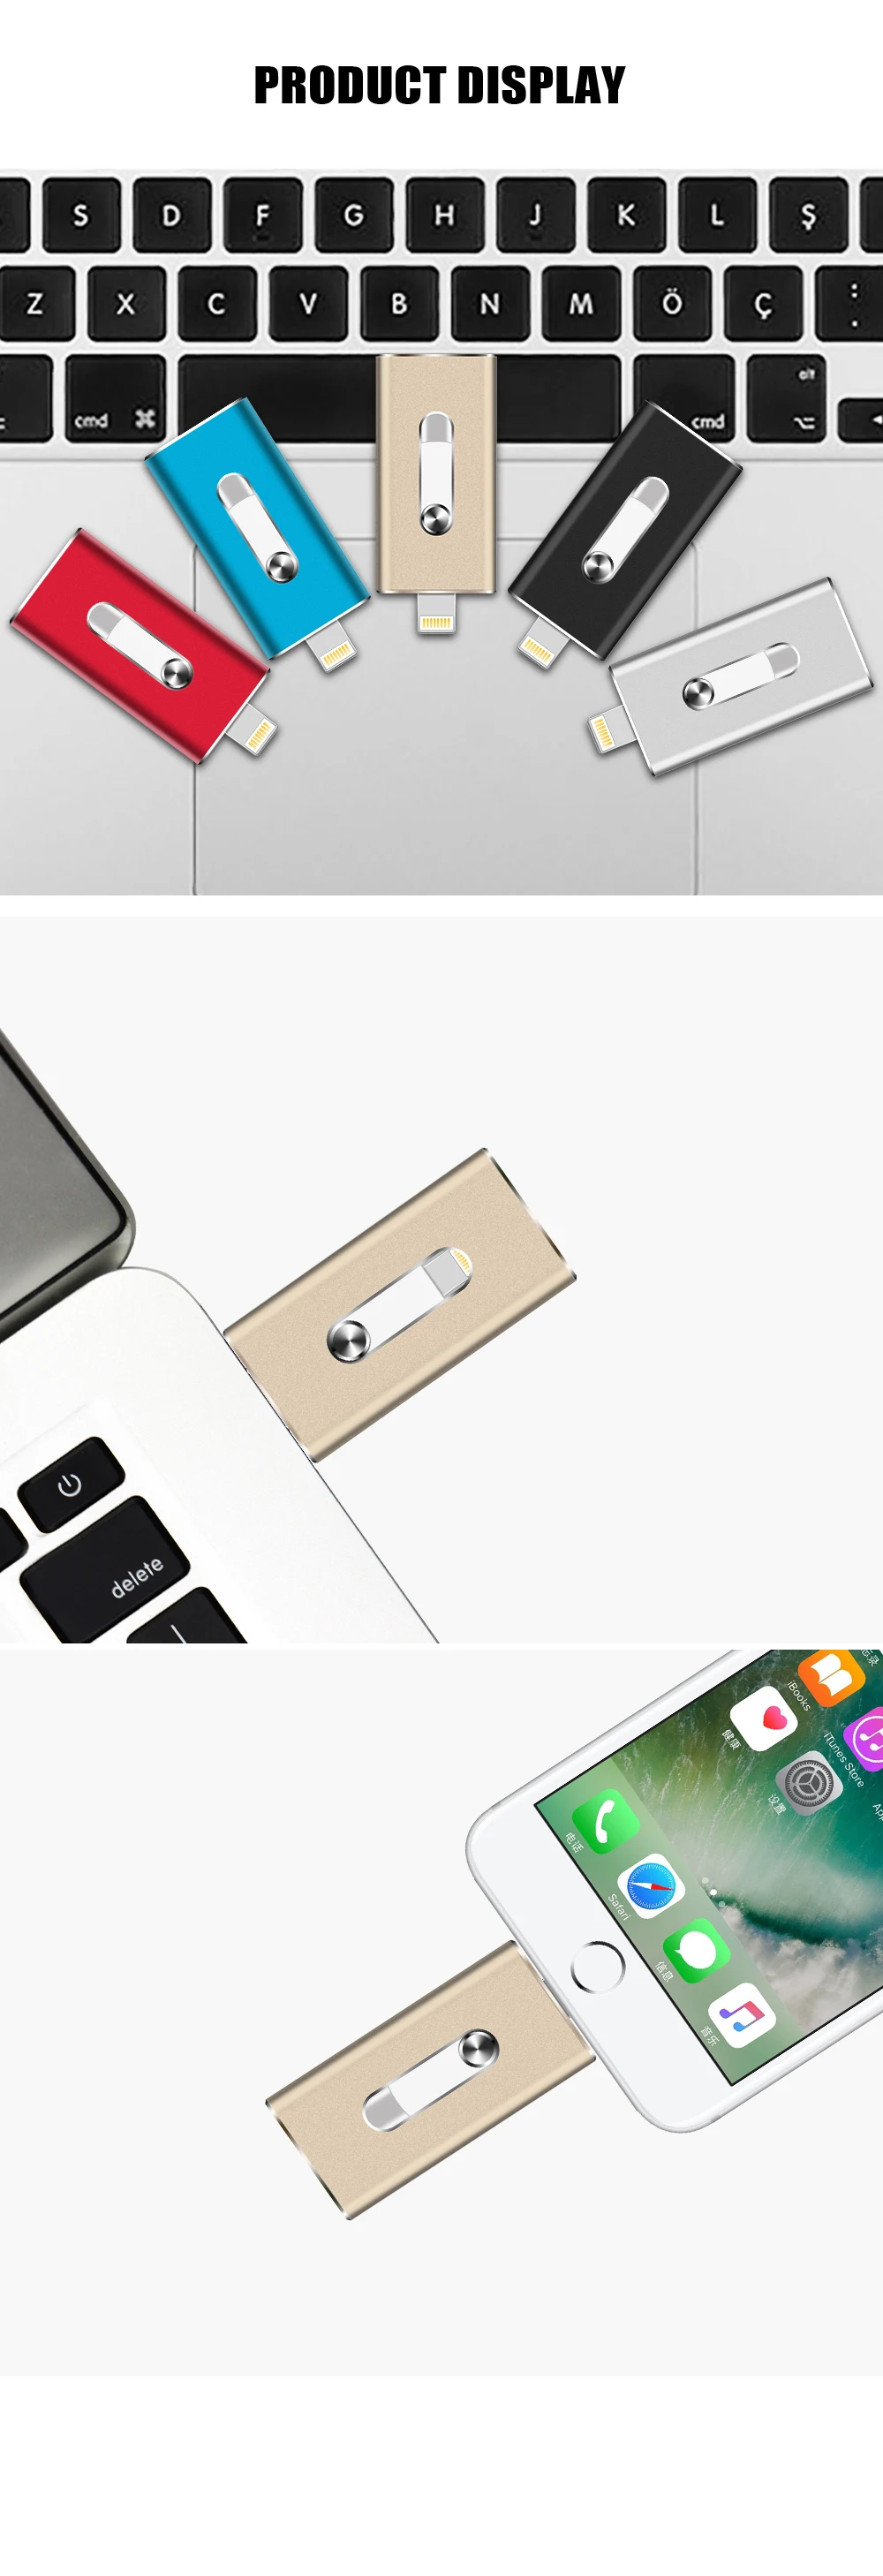 USB флеш-накопитель для iPhone 7,8, 6, 6 Plus, ipad металлическая ручка-накопитель HD memory stick двойного назначения мобильный Otg Micro 32 GB 64 GB флешка